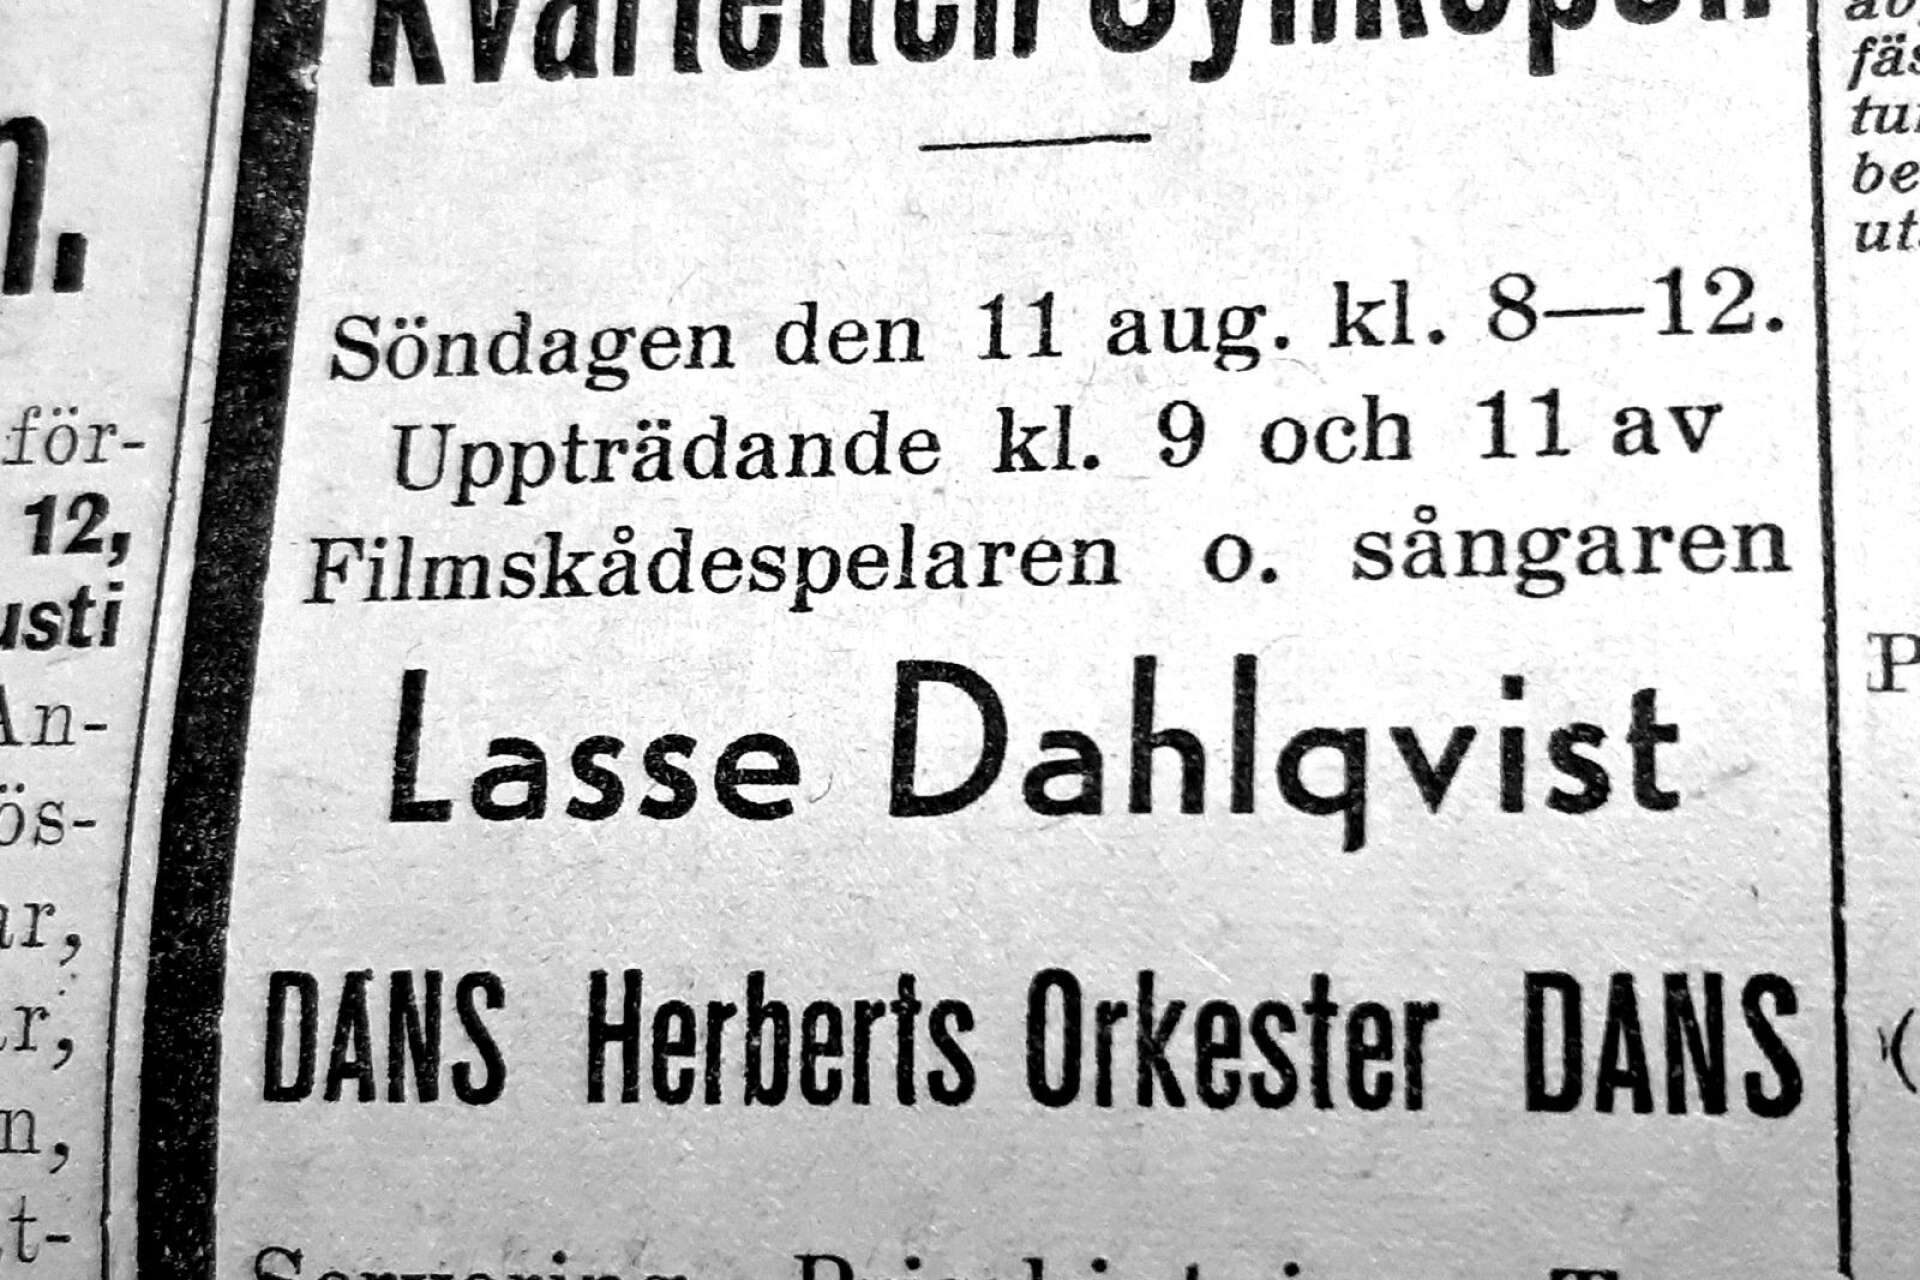 Idrottsmässans andra helg hade sångaren, skådespelaren och låtskrivaren Lasse Dahlqvist som dragplåster tillsammans med populära Kvartetten Synkopen. Militärer gick in för halva priset.